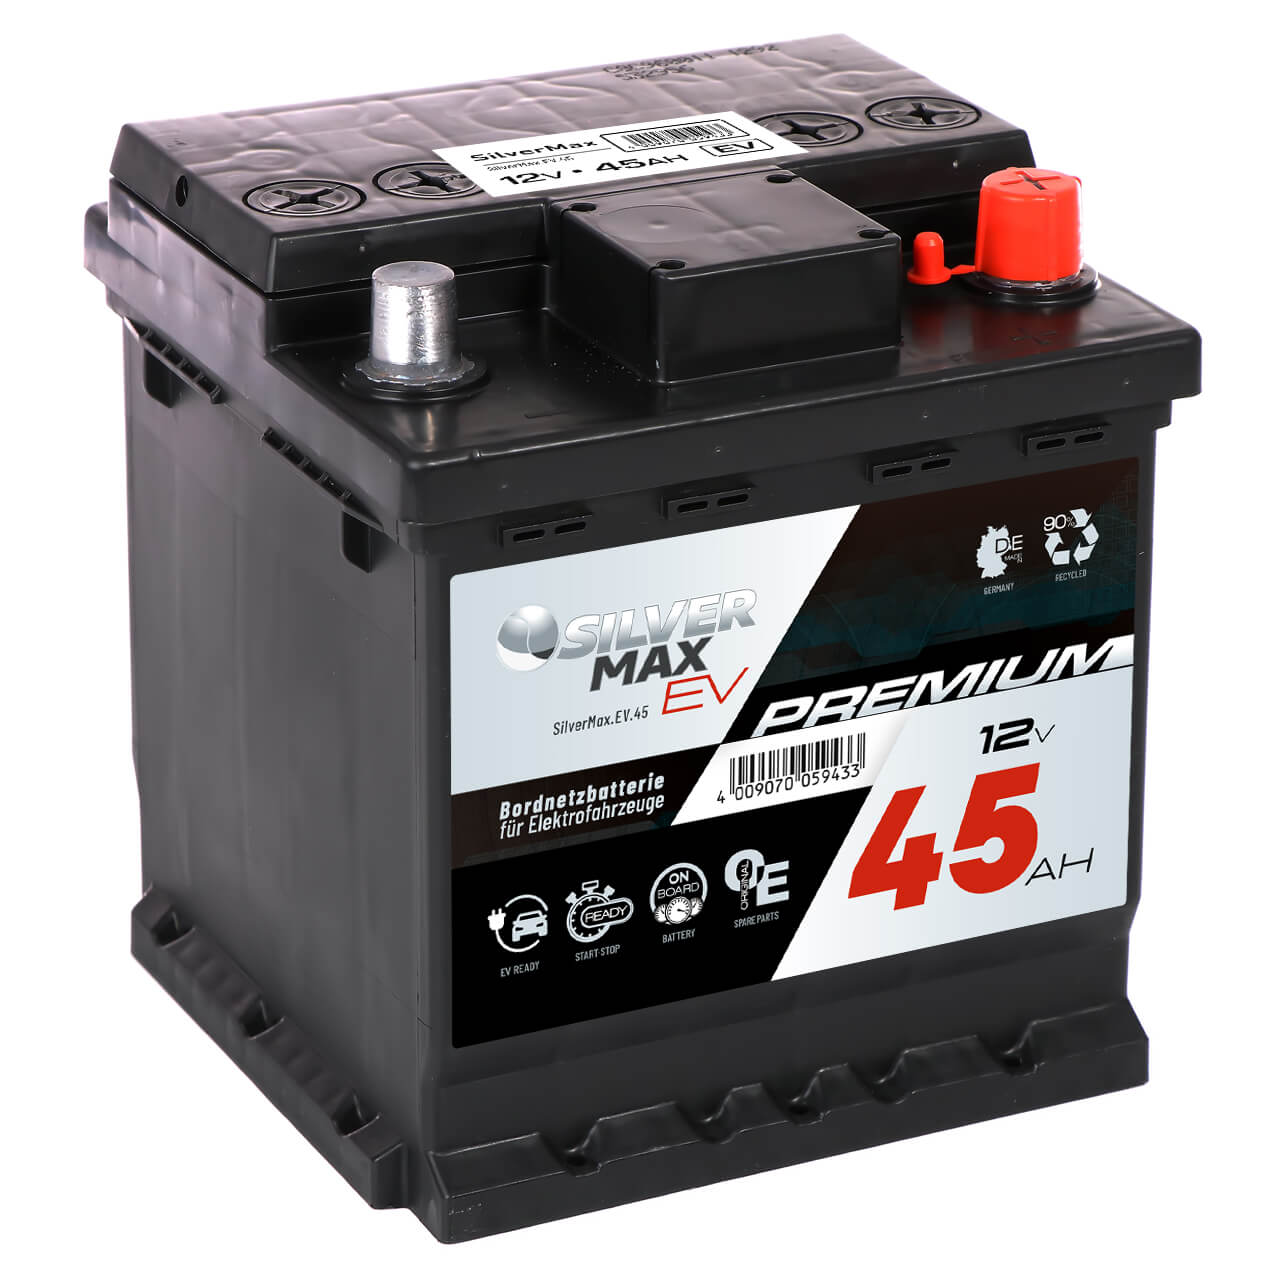 Bordnetzbatterie SilverMax EV 12V 45Ah Seite links